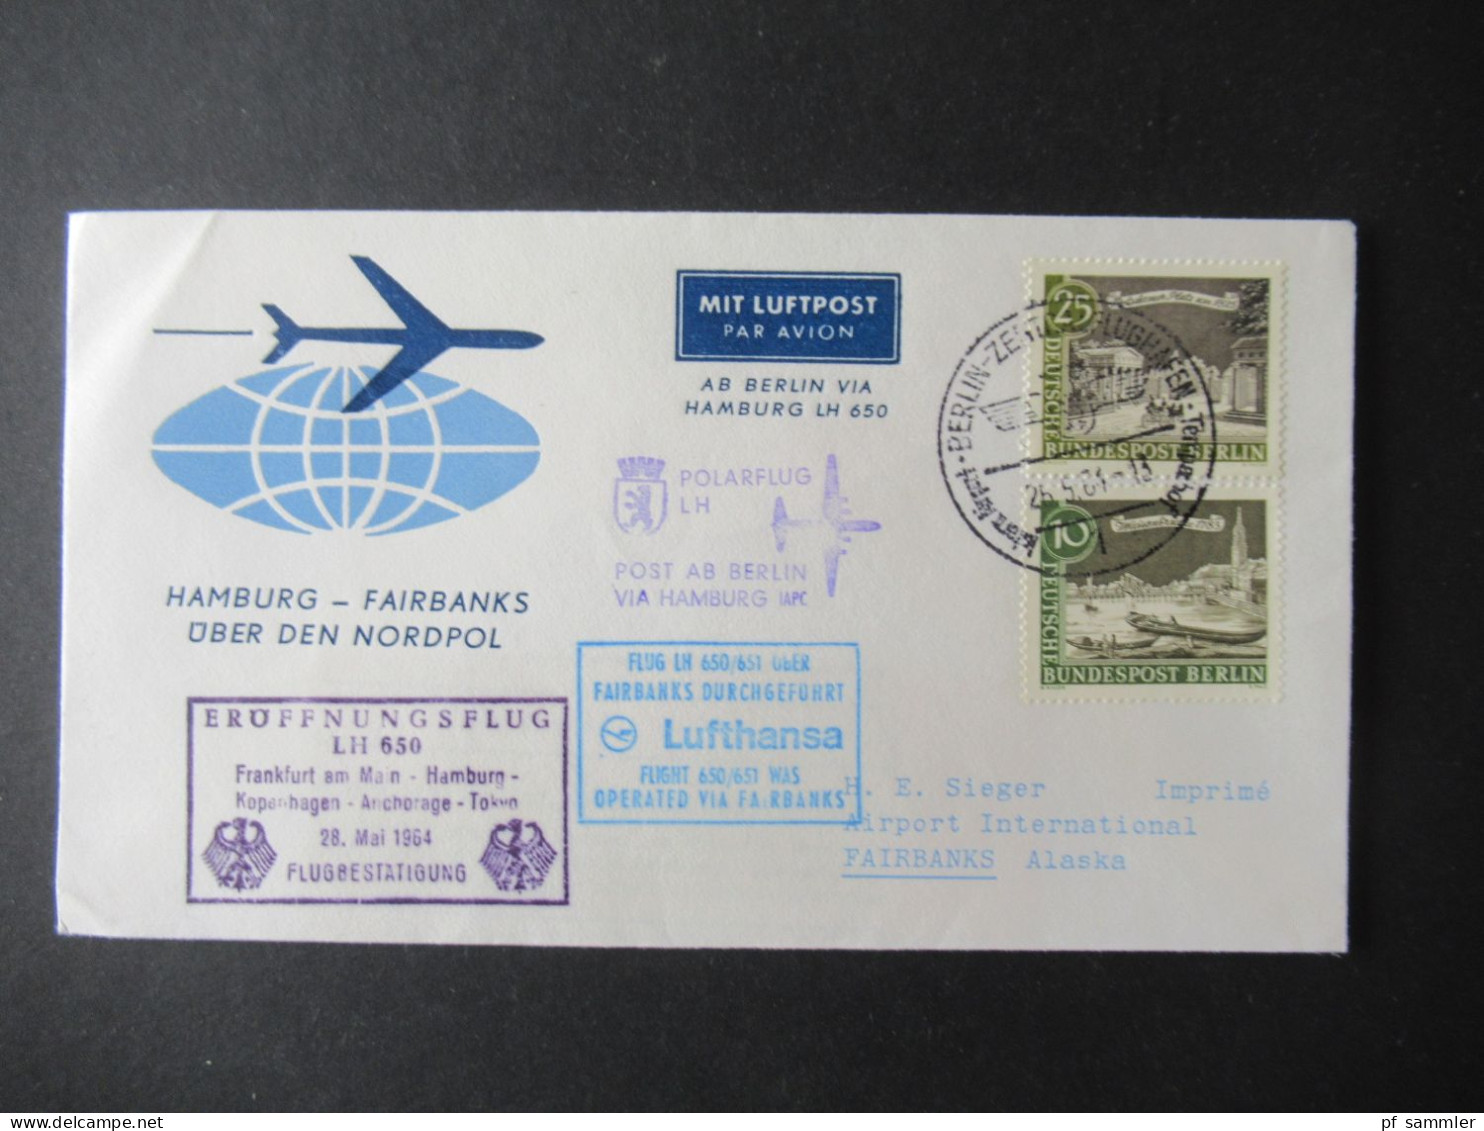 1964 Flugwesen / Erstflug /Luftpost Lufthansa Sieger Belege / Fairbanks over the Northpole und Berlin - Fairbanks Alaska